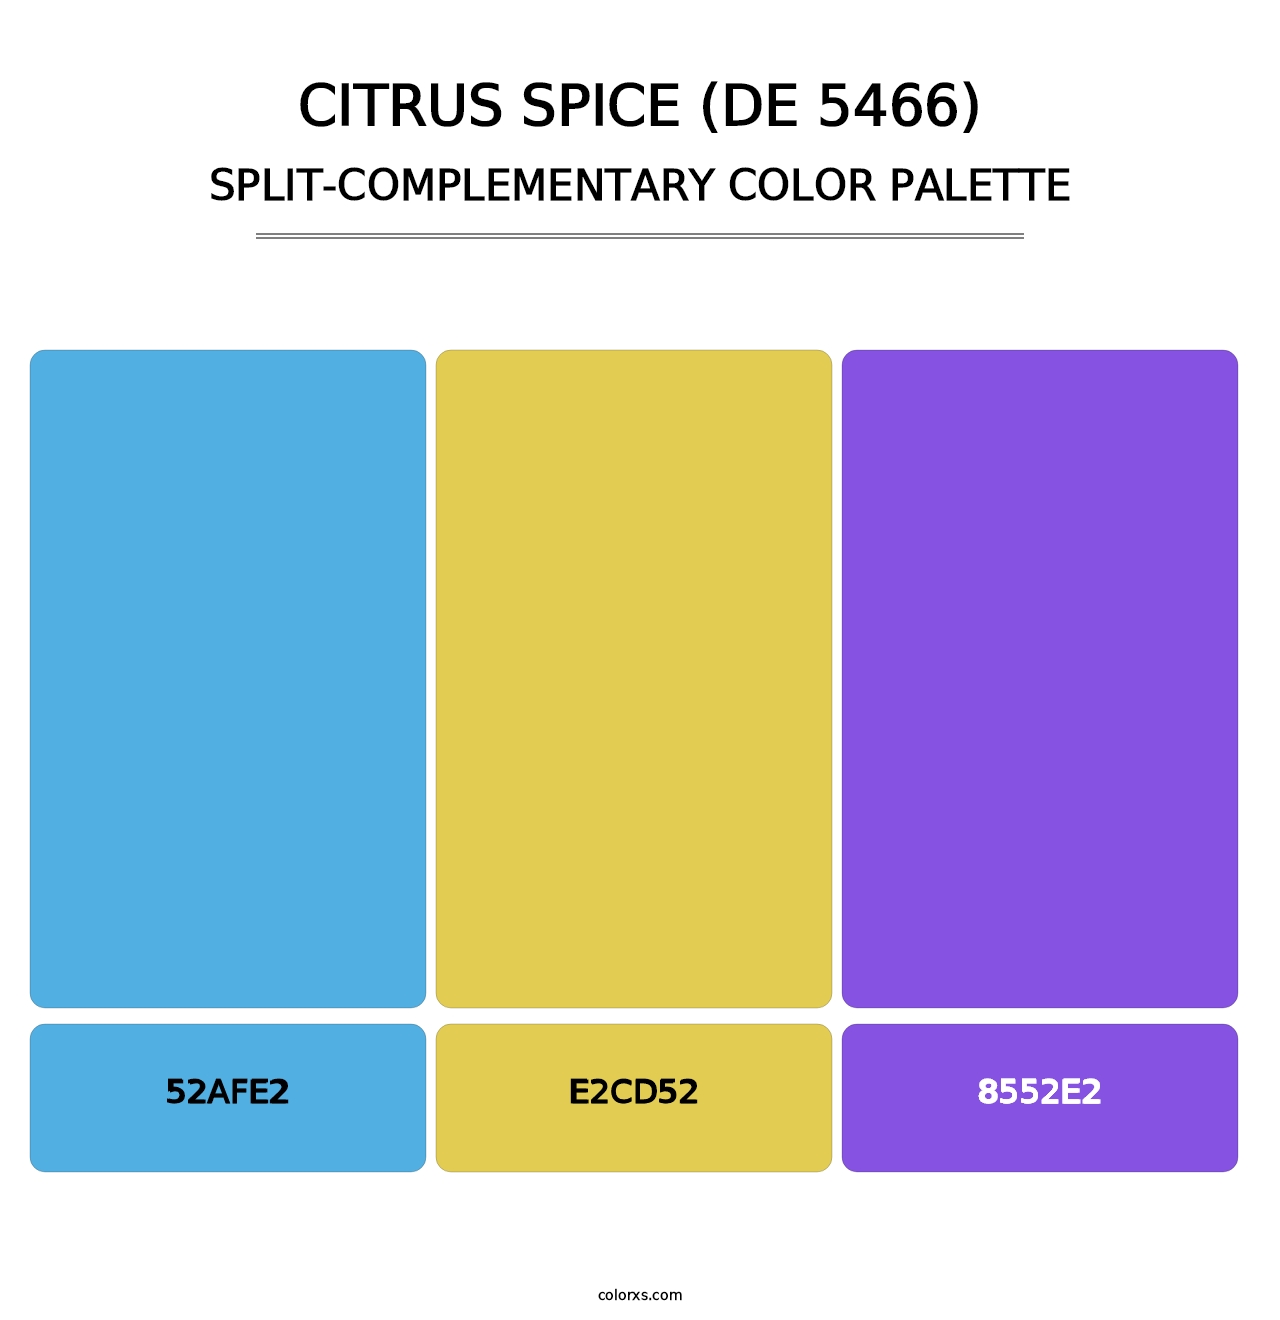 Citrus Spice (DE 5466) - Split-Complementary Color Palette